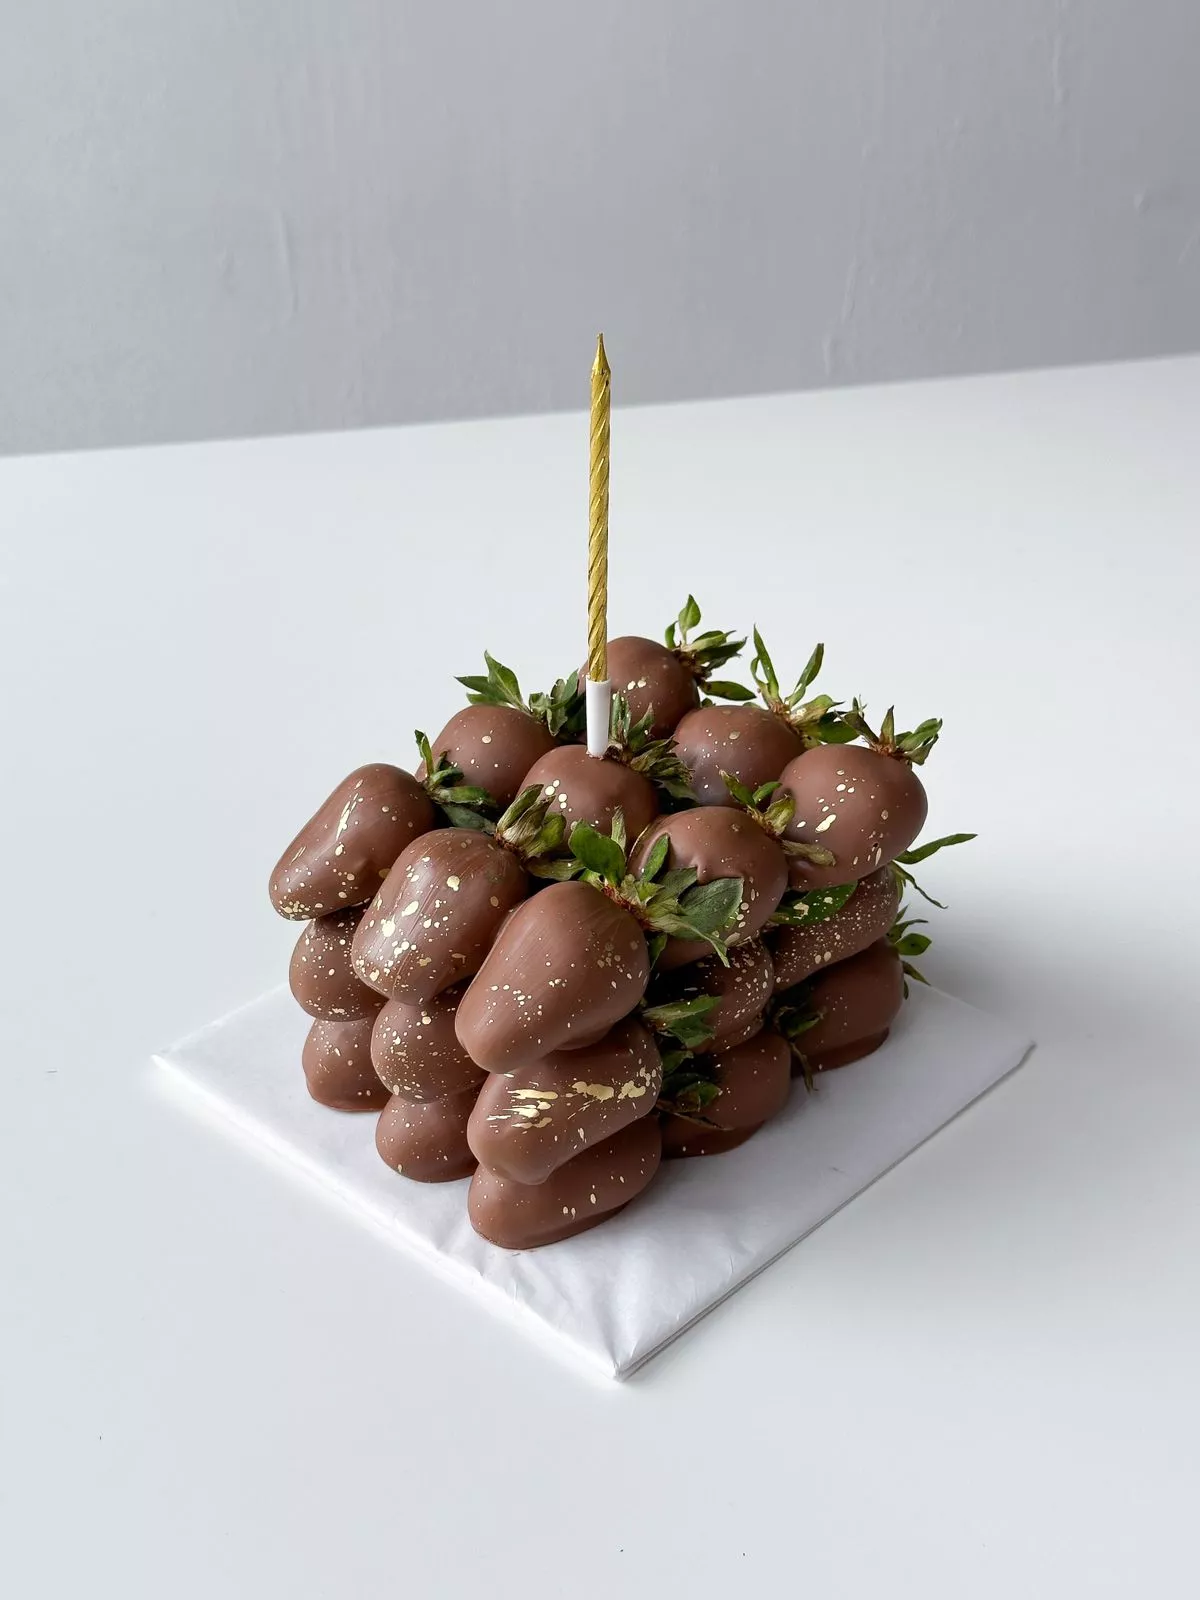 Клубничный торт композиция из клубники в молочном шоколаде